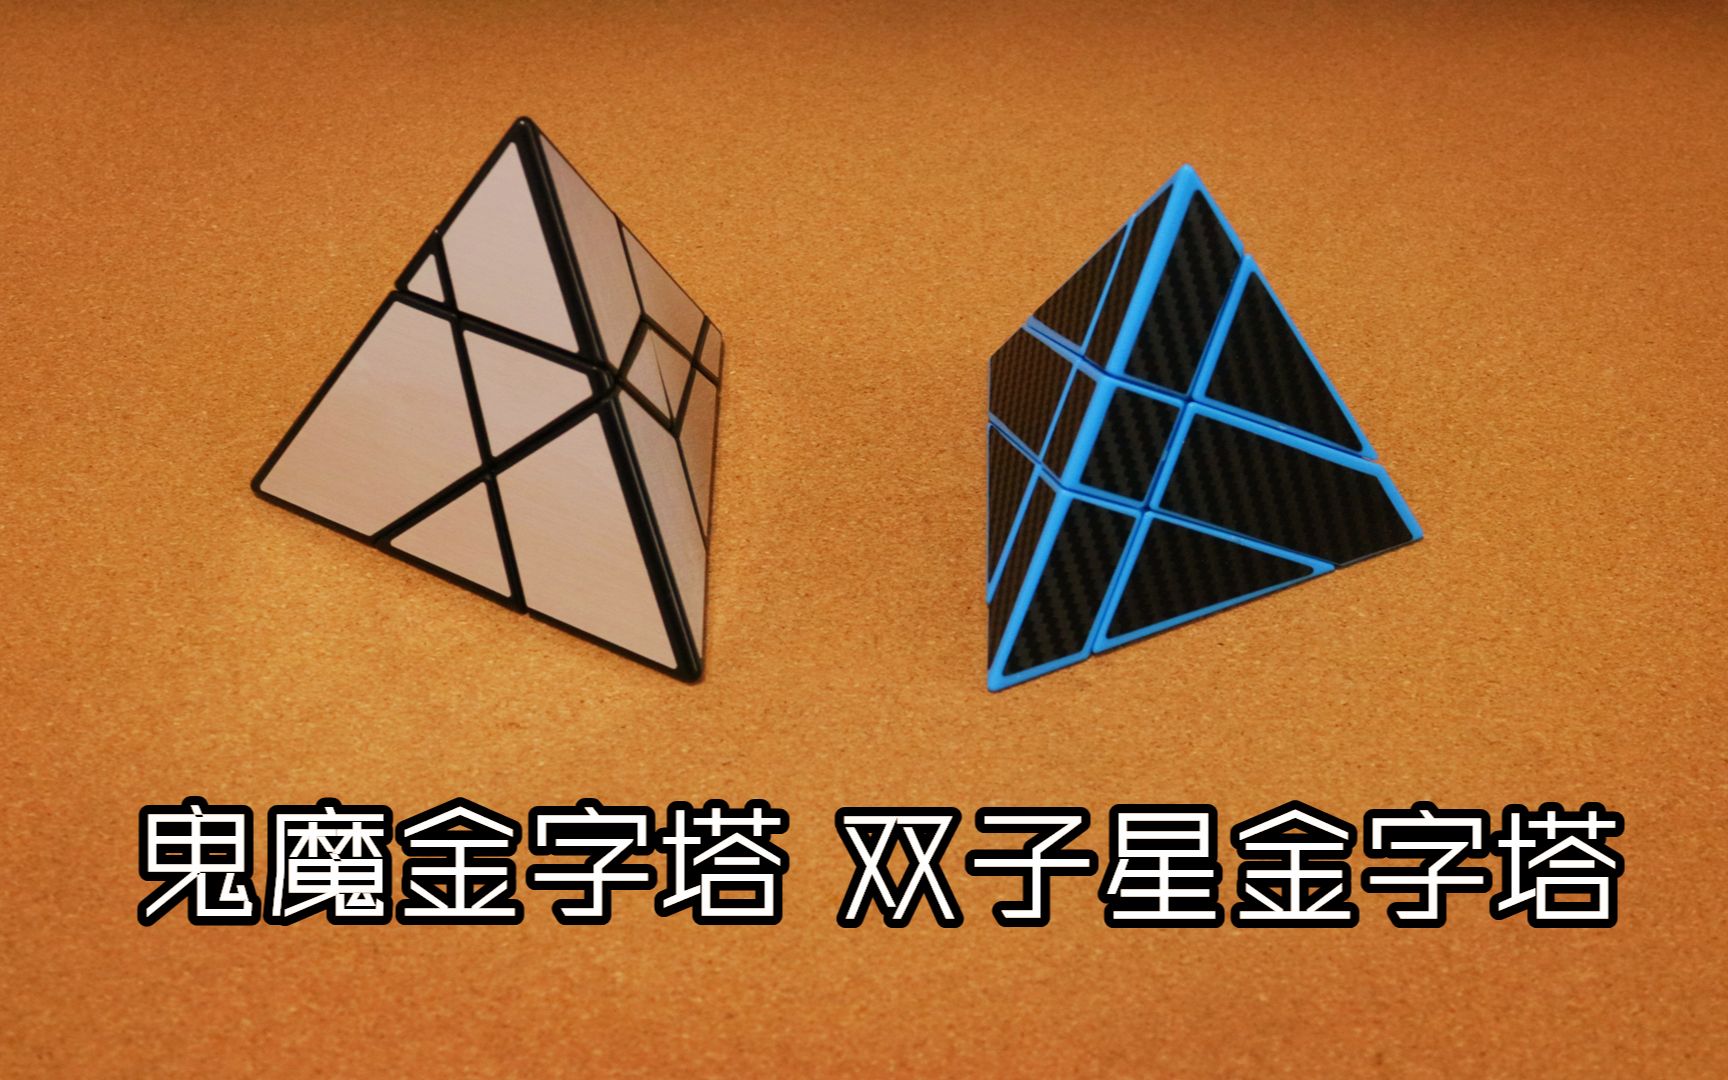 奇艺金字塔魔方三阶三角形3阶魔方 初学者入门魔方 培训专用-阿里巴巴